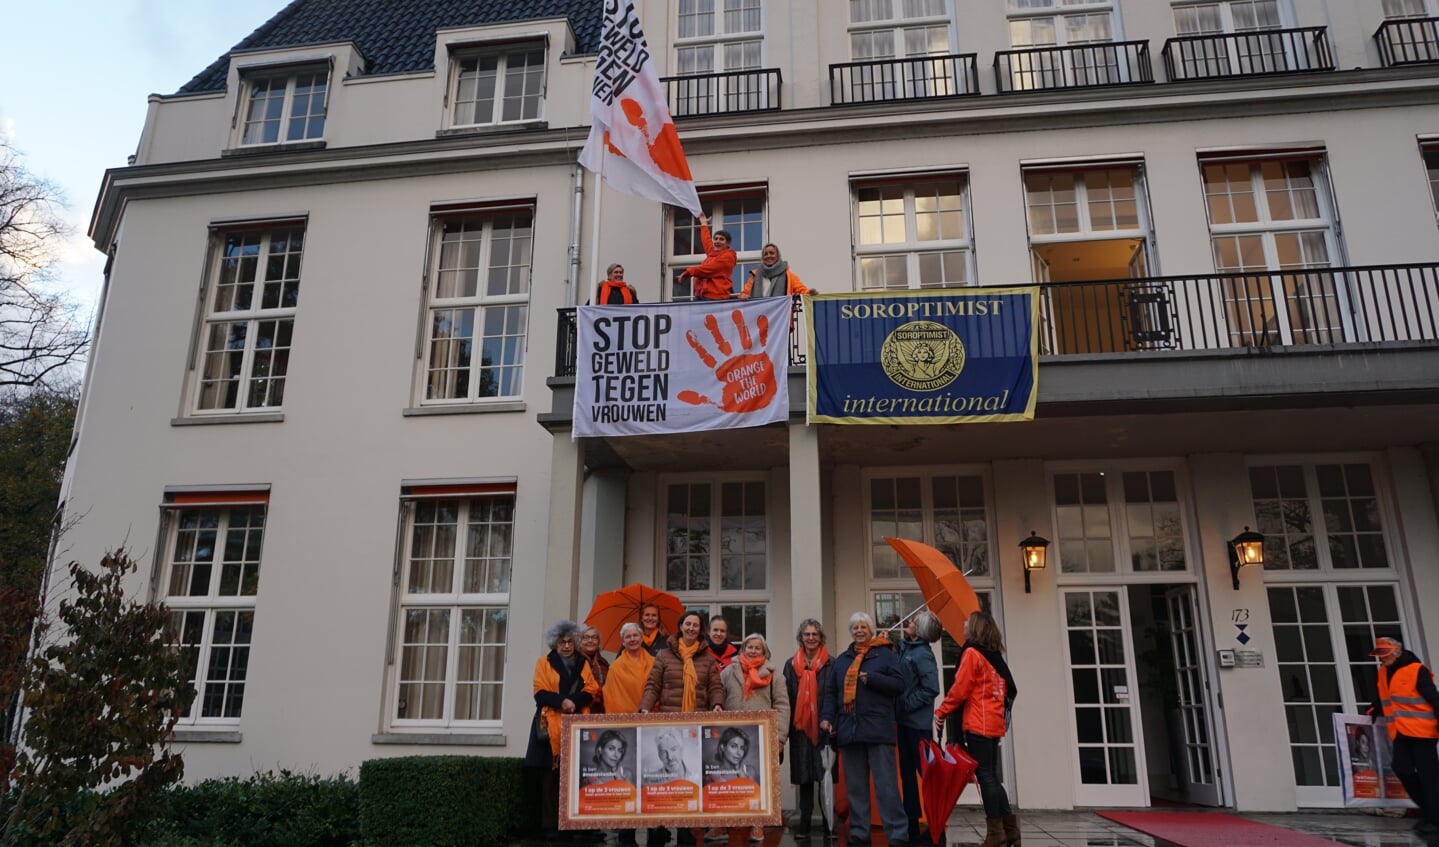 Enkele leden van de Soroptimisten hijsen de vlag tegen geweld hijsen op het balkon van het gemeentehuis. 